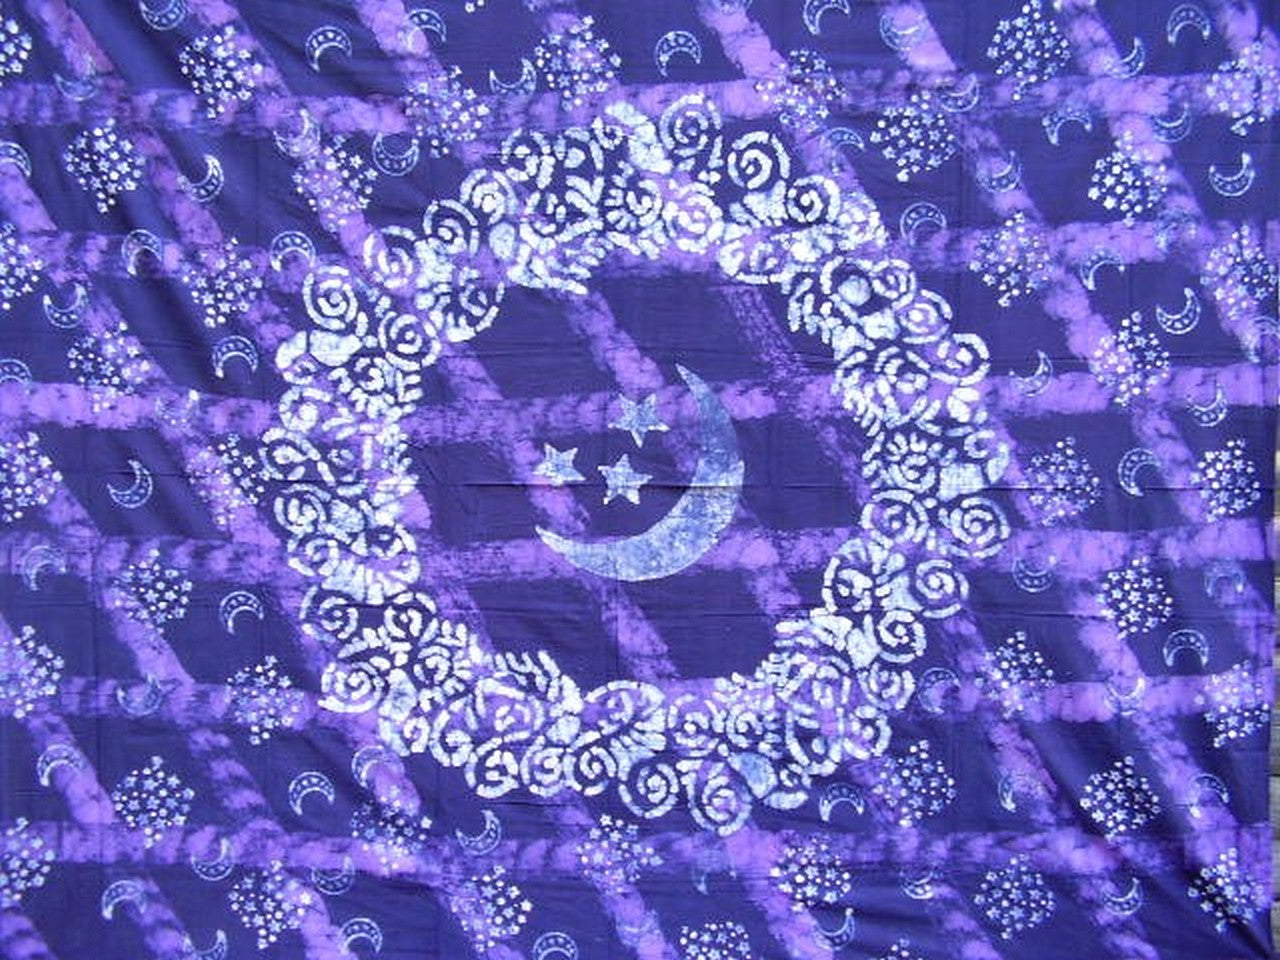 Hemelse batik-tapijt katoenen sprei 300 x 300 cm Queen-King paars